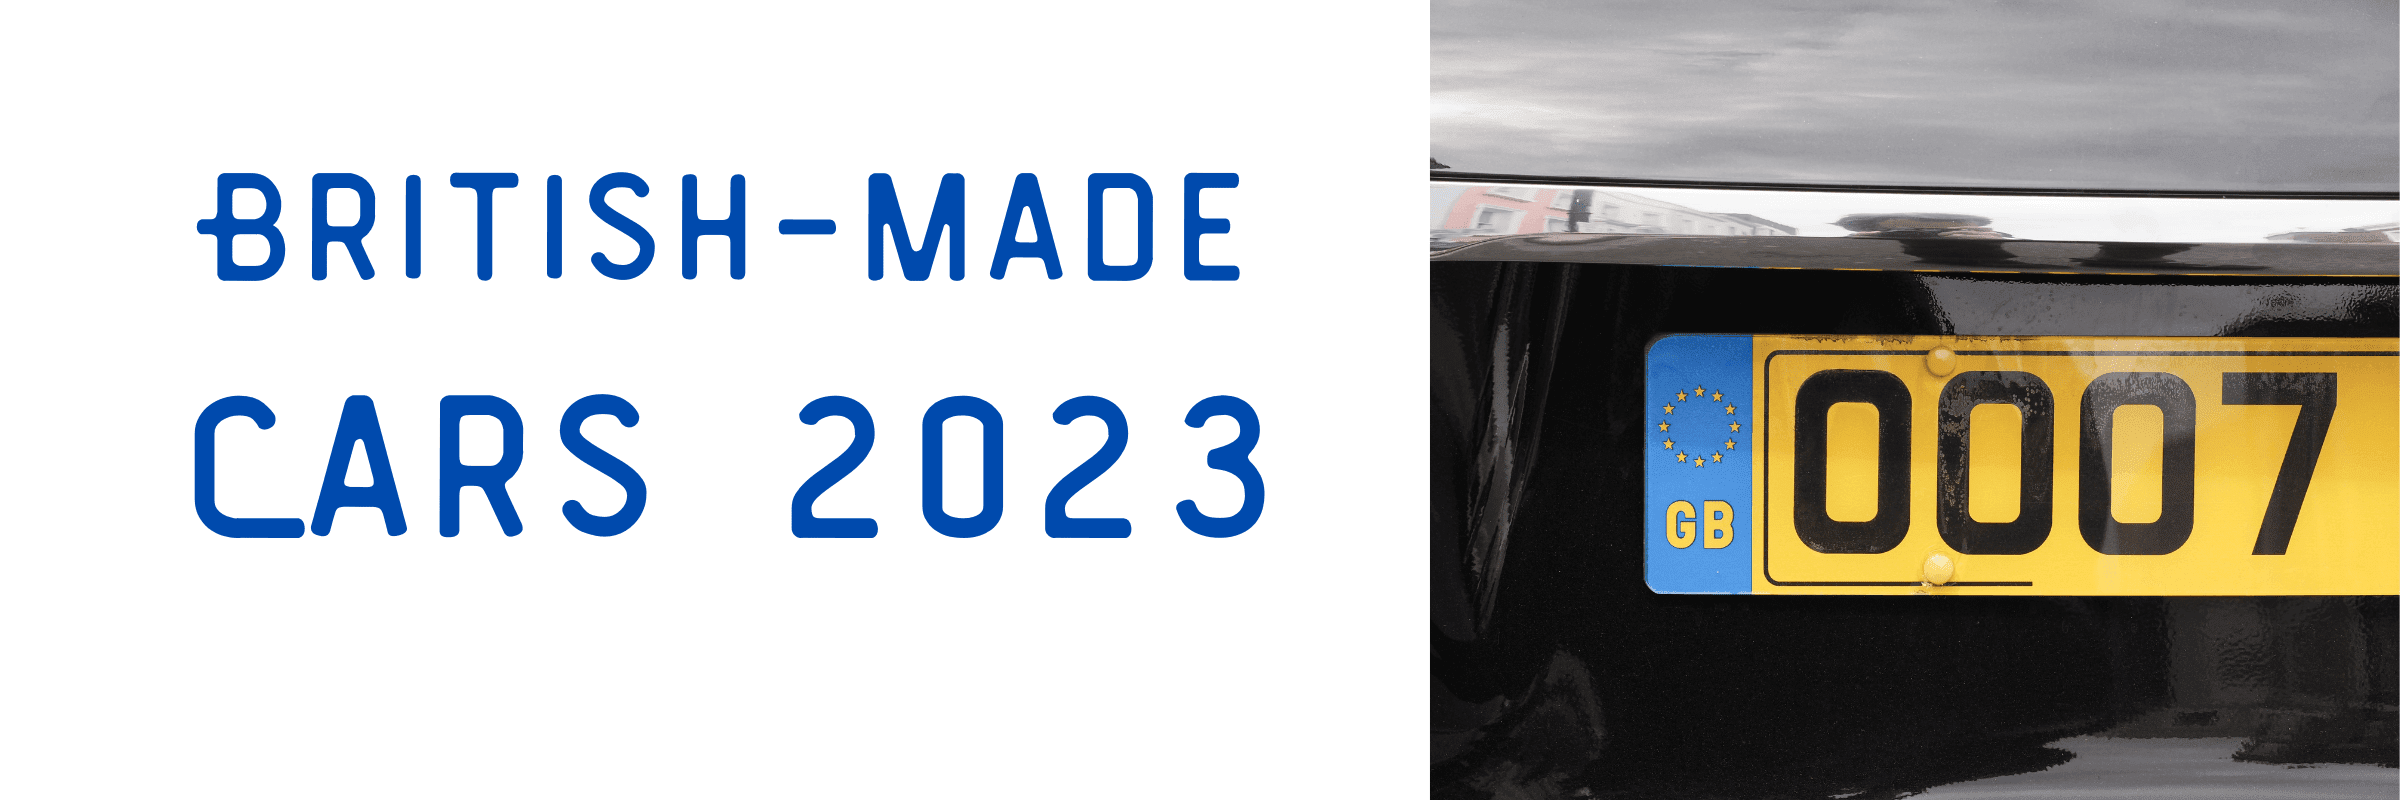 British-made Cars 2023 (1)